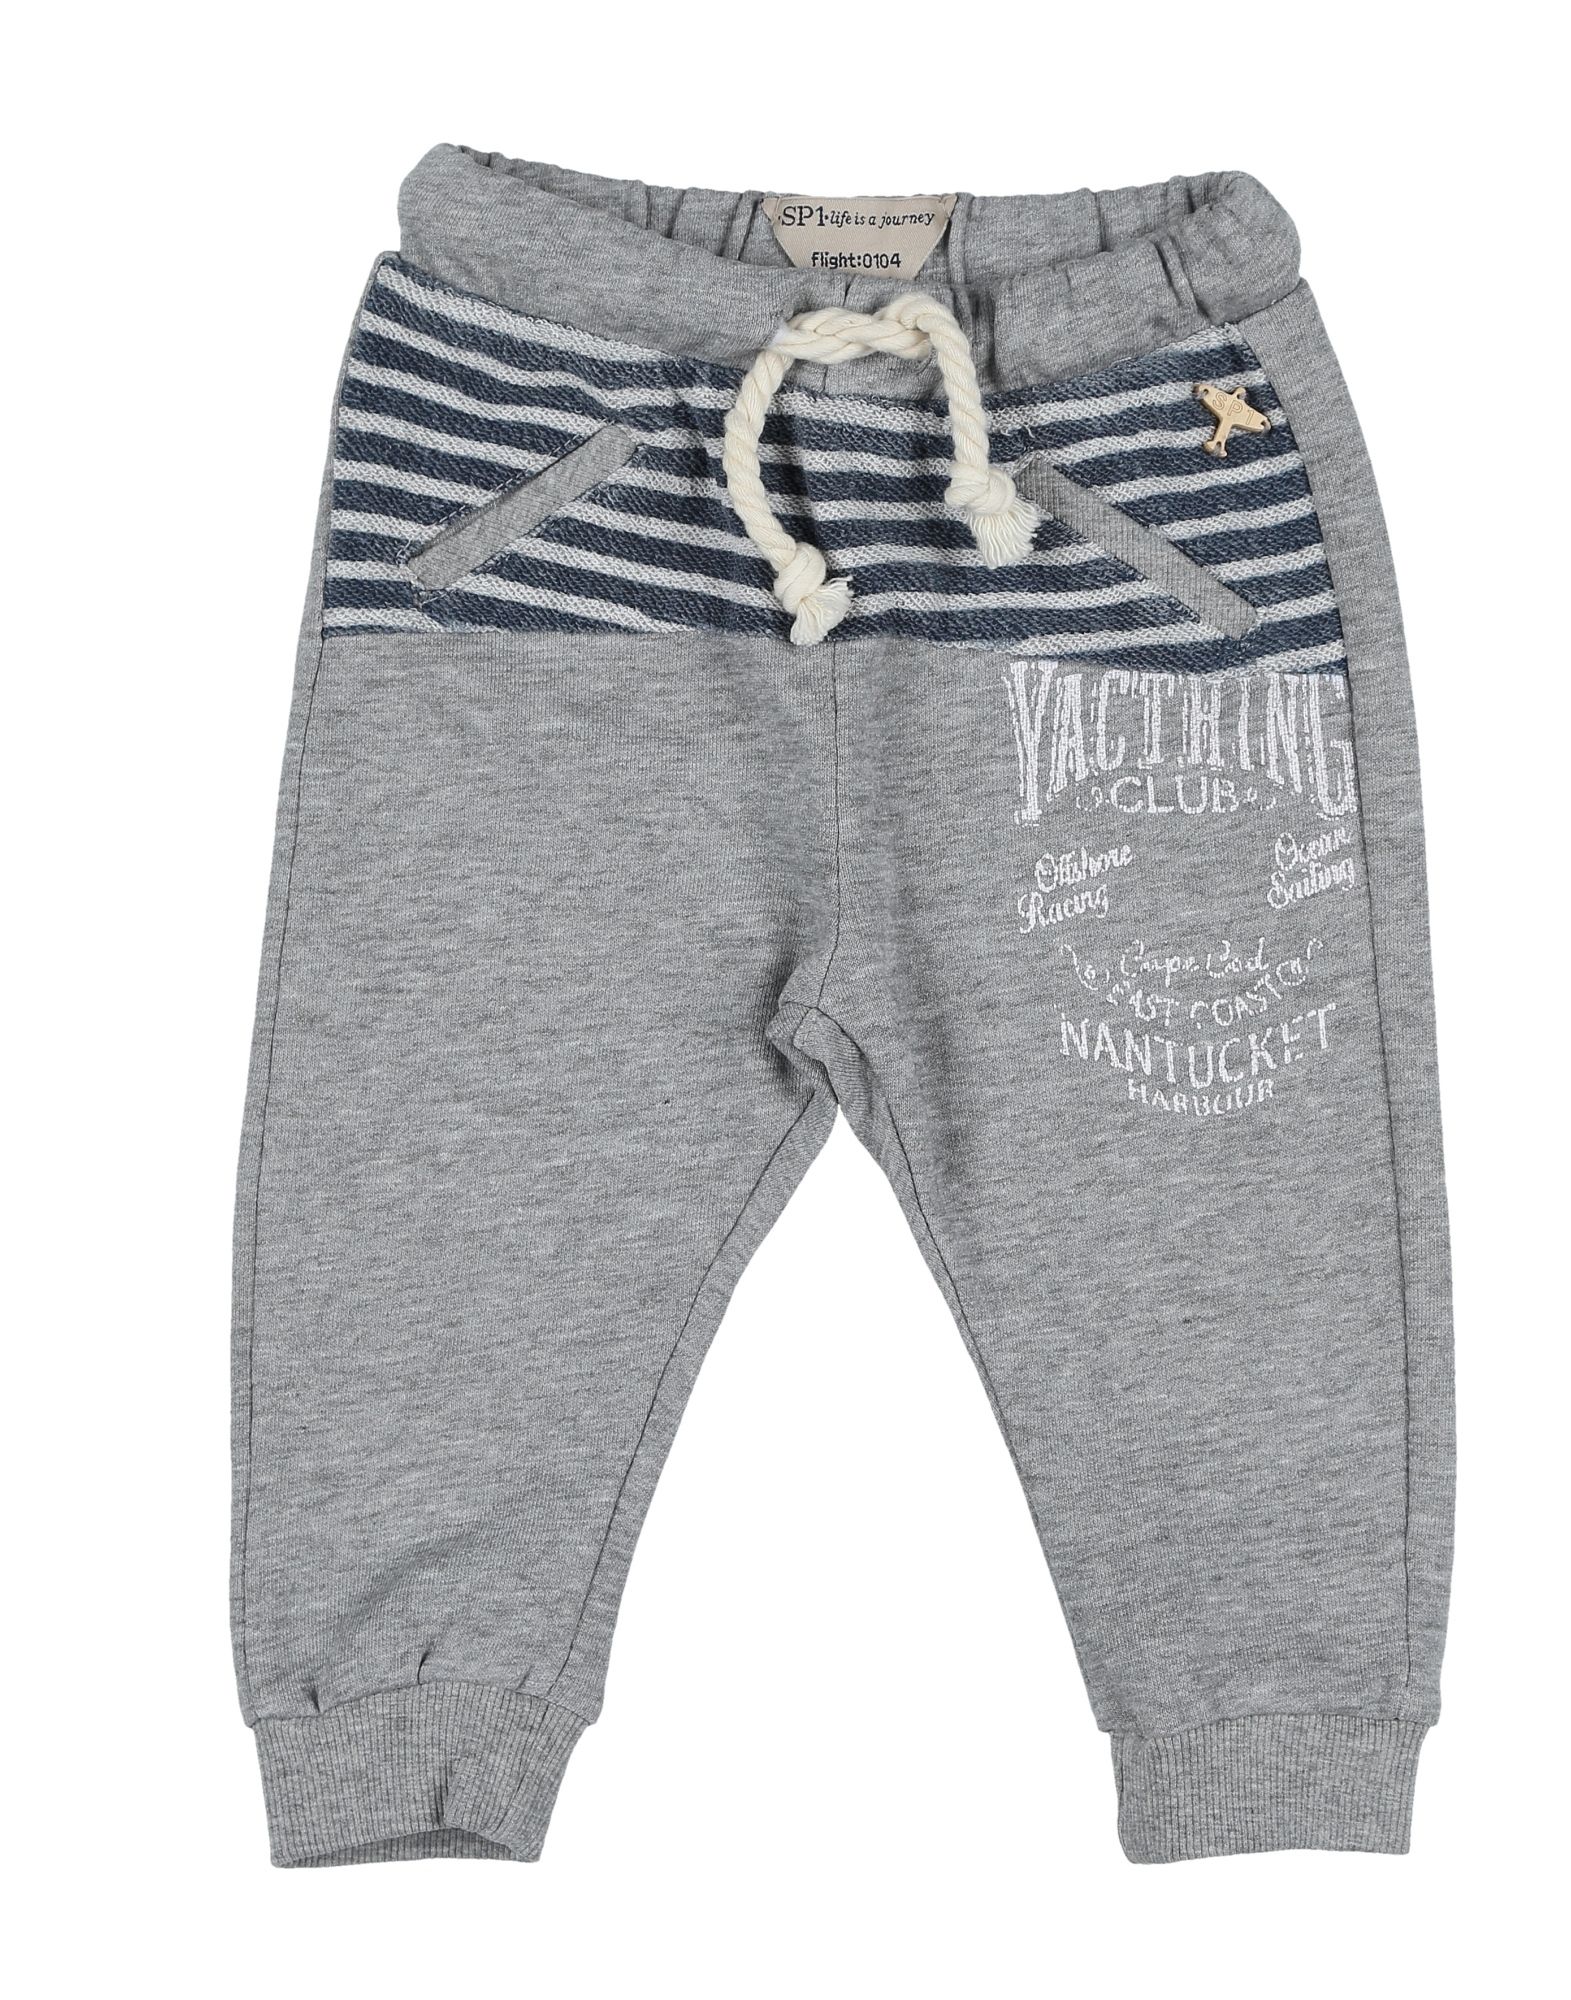 Shop Sp1 Newborn Boy Pants Light Grey Size 3 Cotton